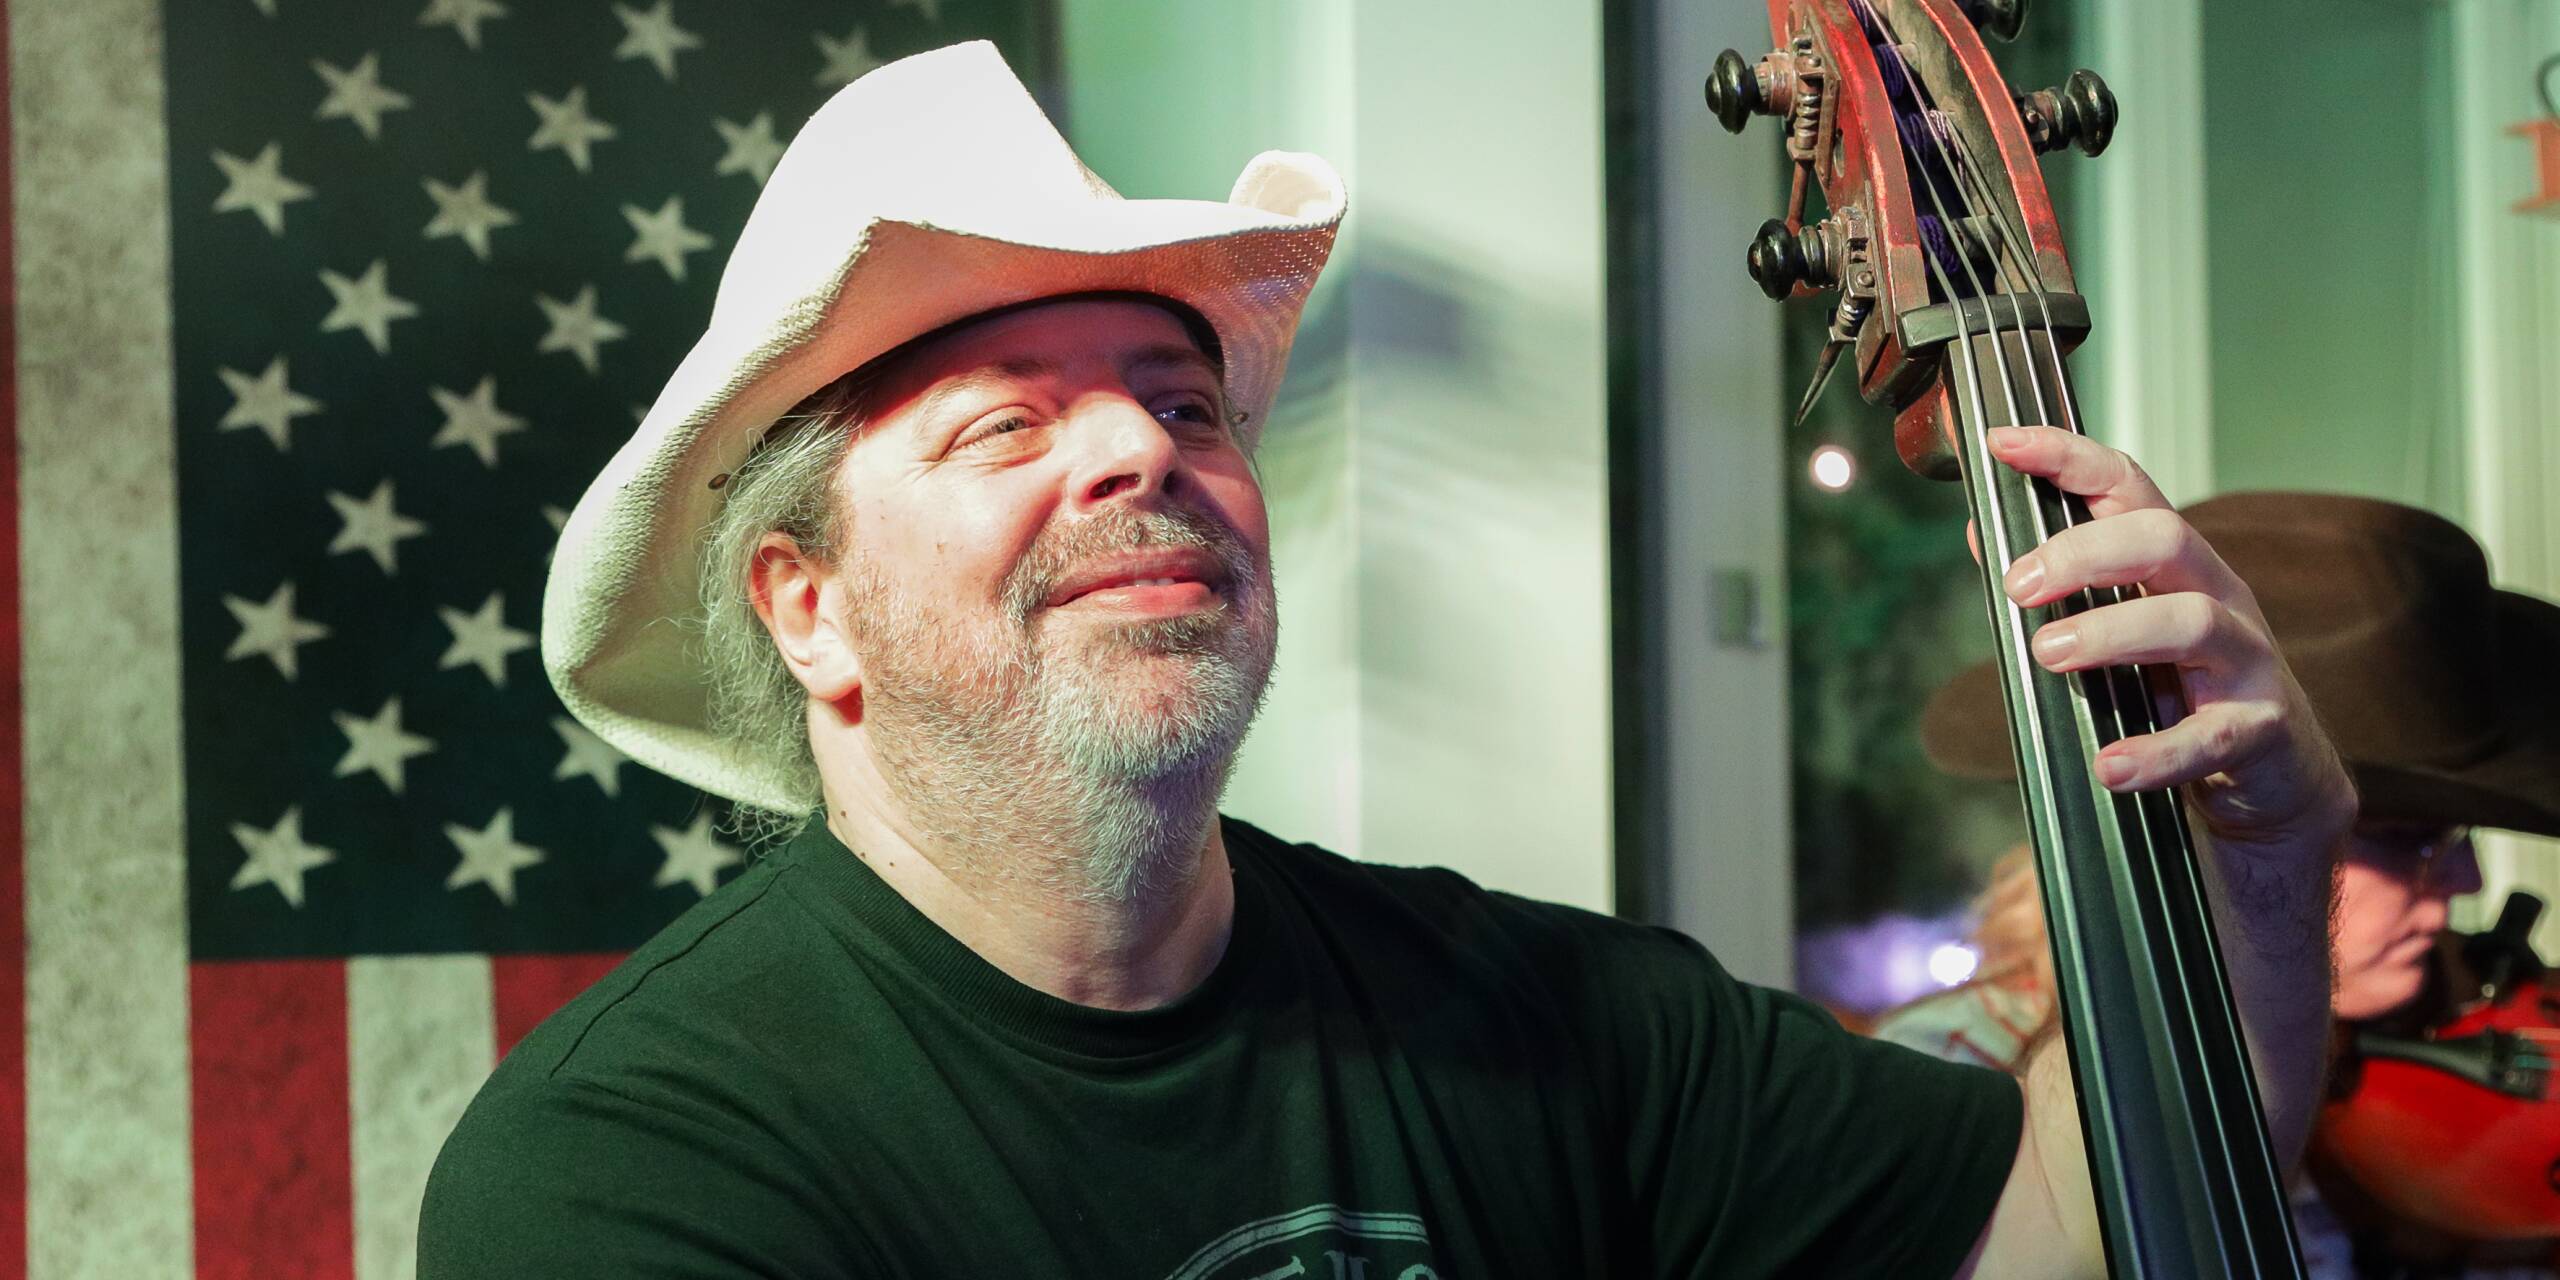 Yeehaw! Mit Cowboy-Hut und der amerikanischen Flagge zeigten Ten Strings gleich, für welche Art von Musik sie stehen.